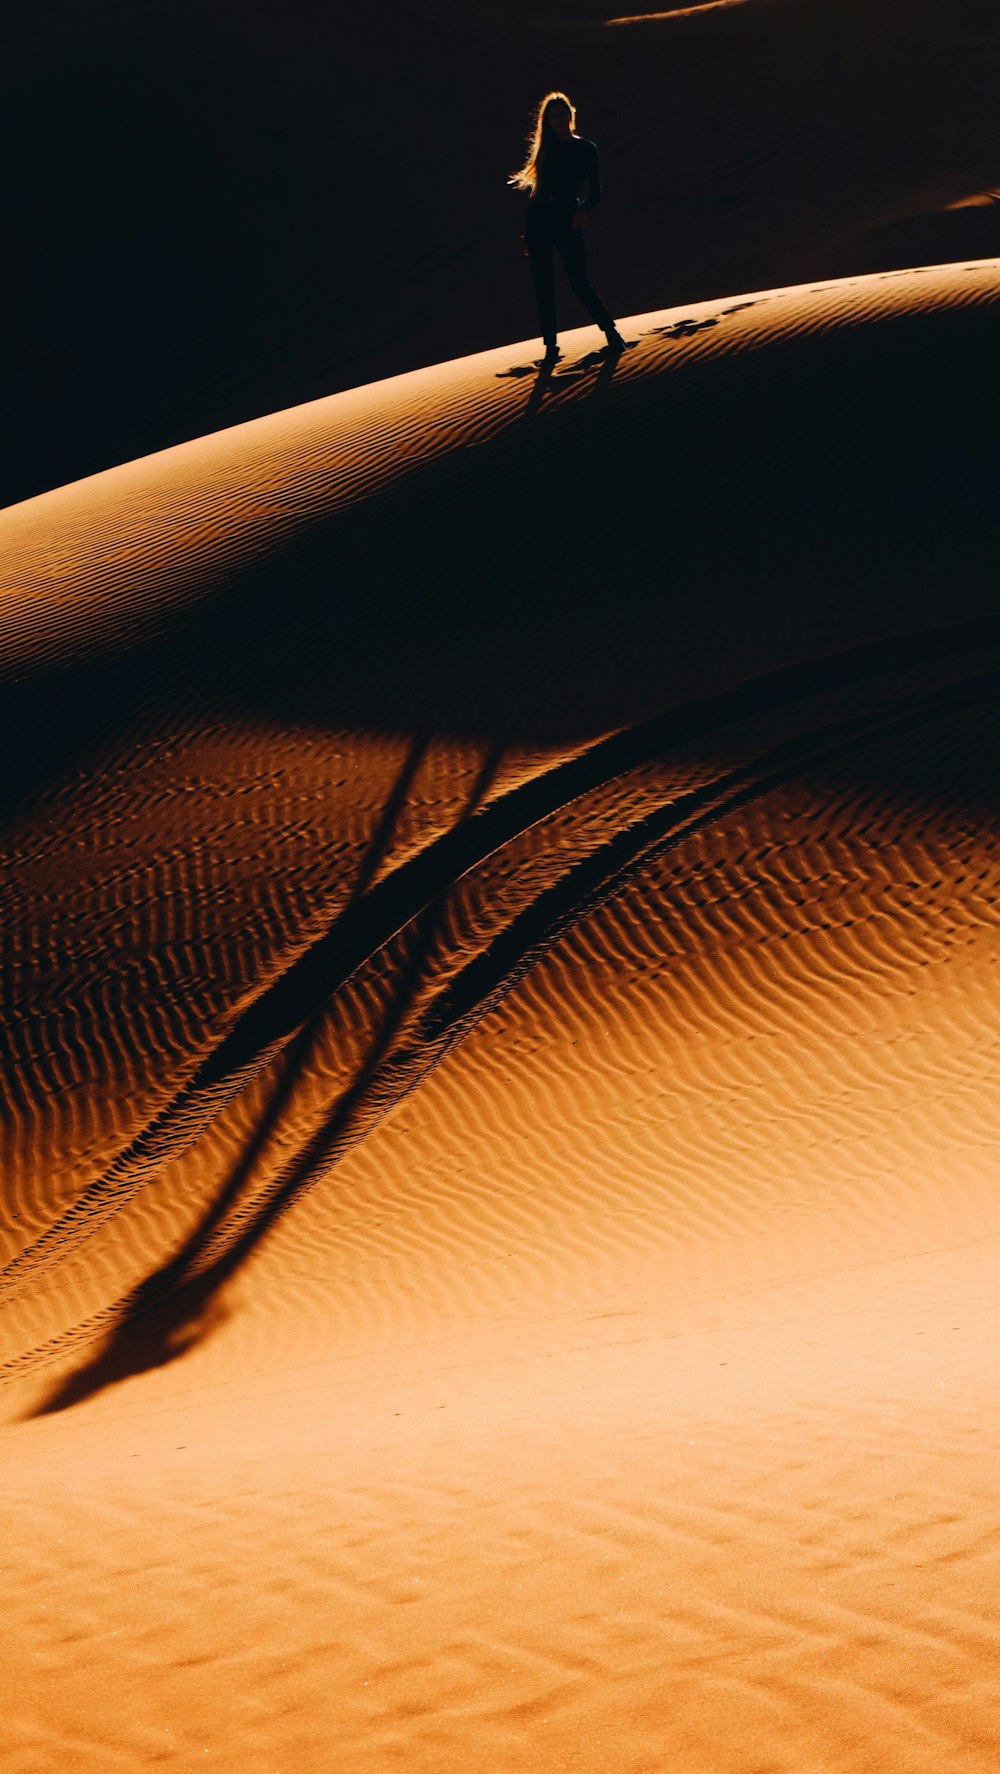 砂漠を歩く女性